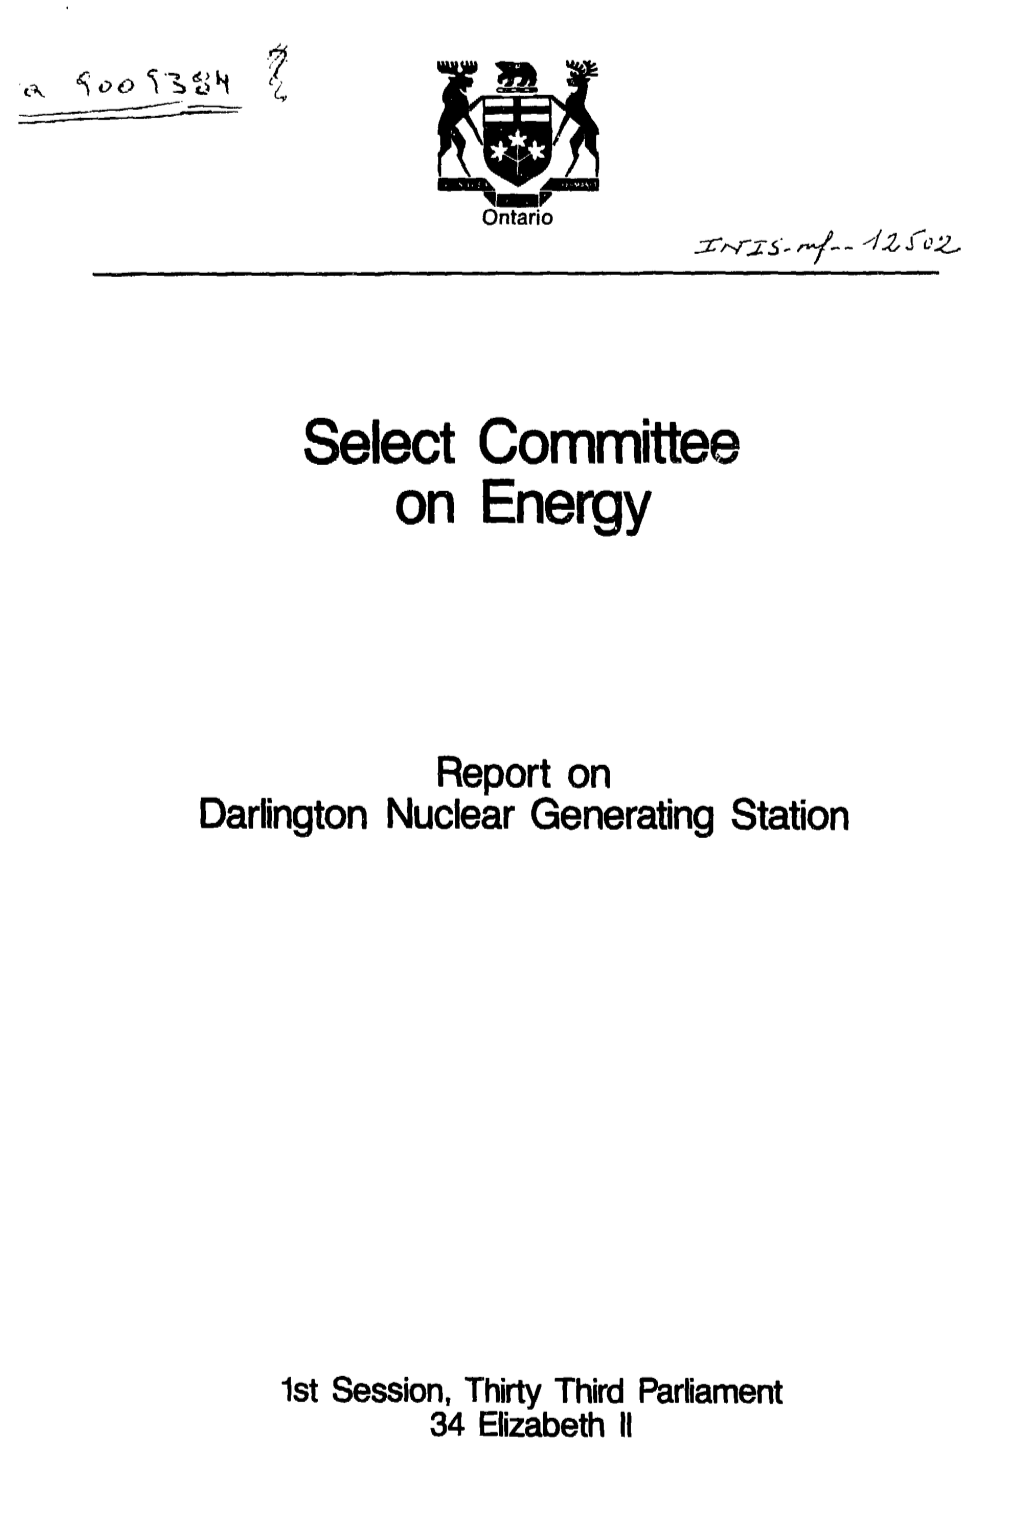 Select Committee on Energy